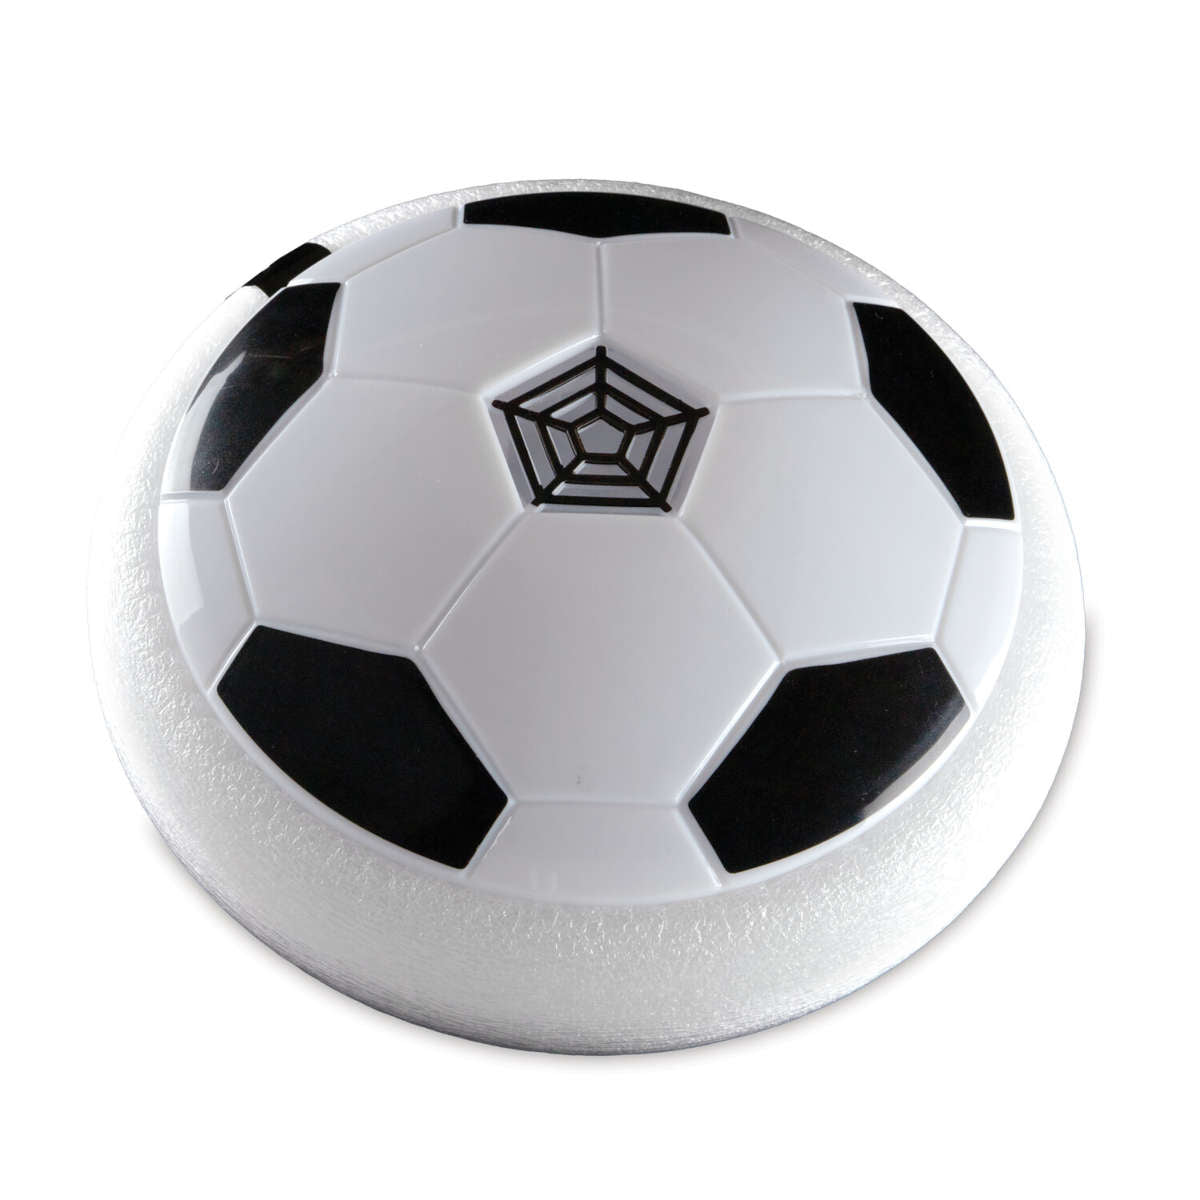 Mindware Super Striker Hover Soccer Ball